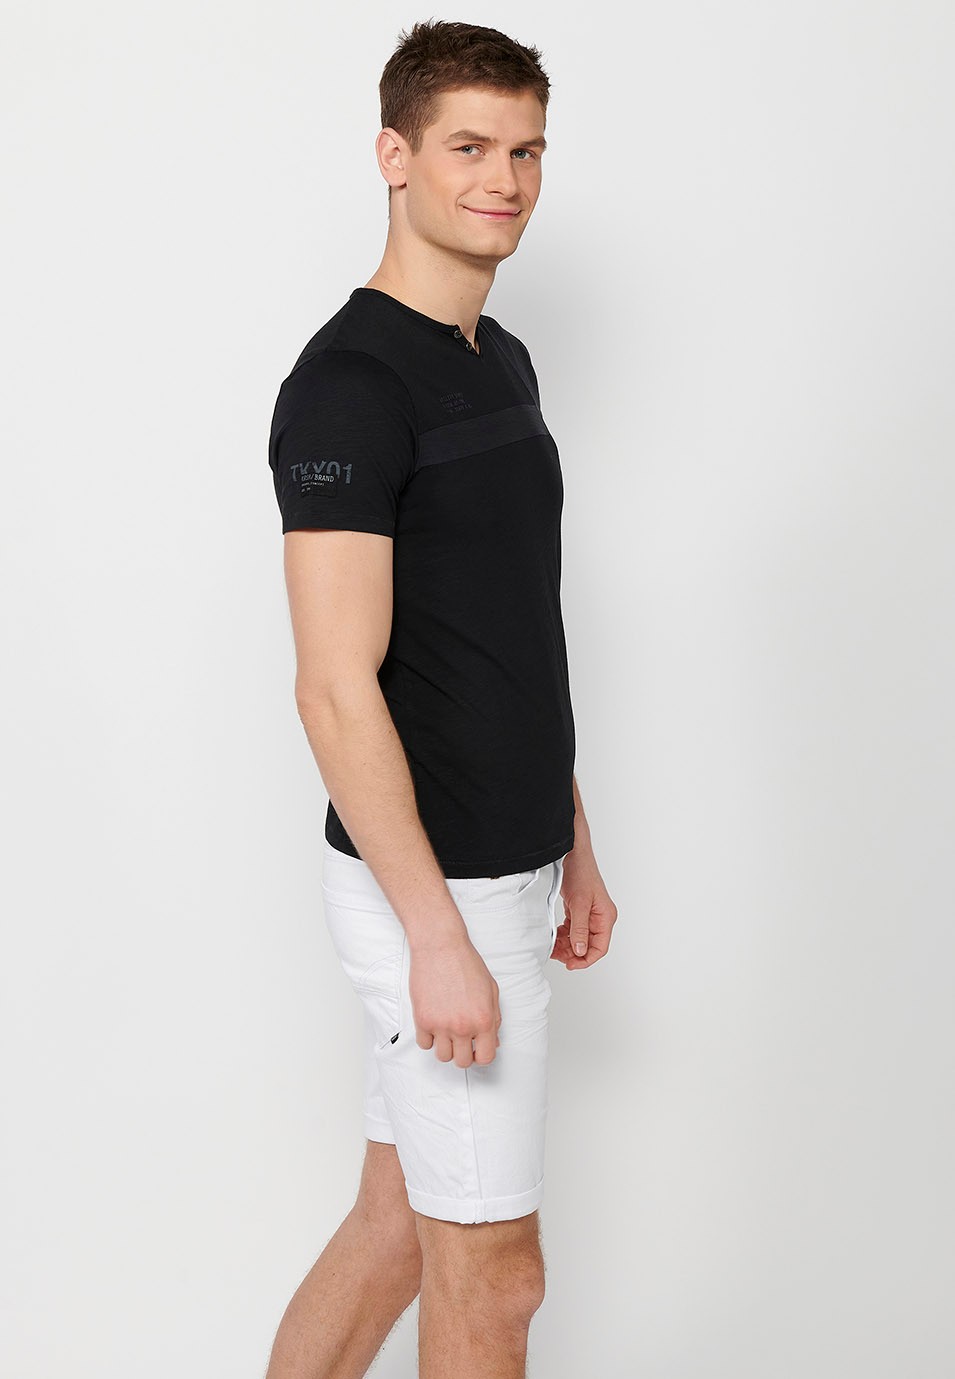 Camiseta de manga corta de algodon, cuello redondo con abertura con botón, color negro para hombre